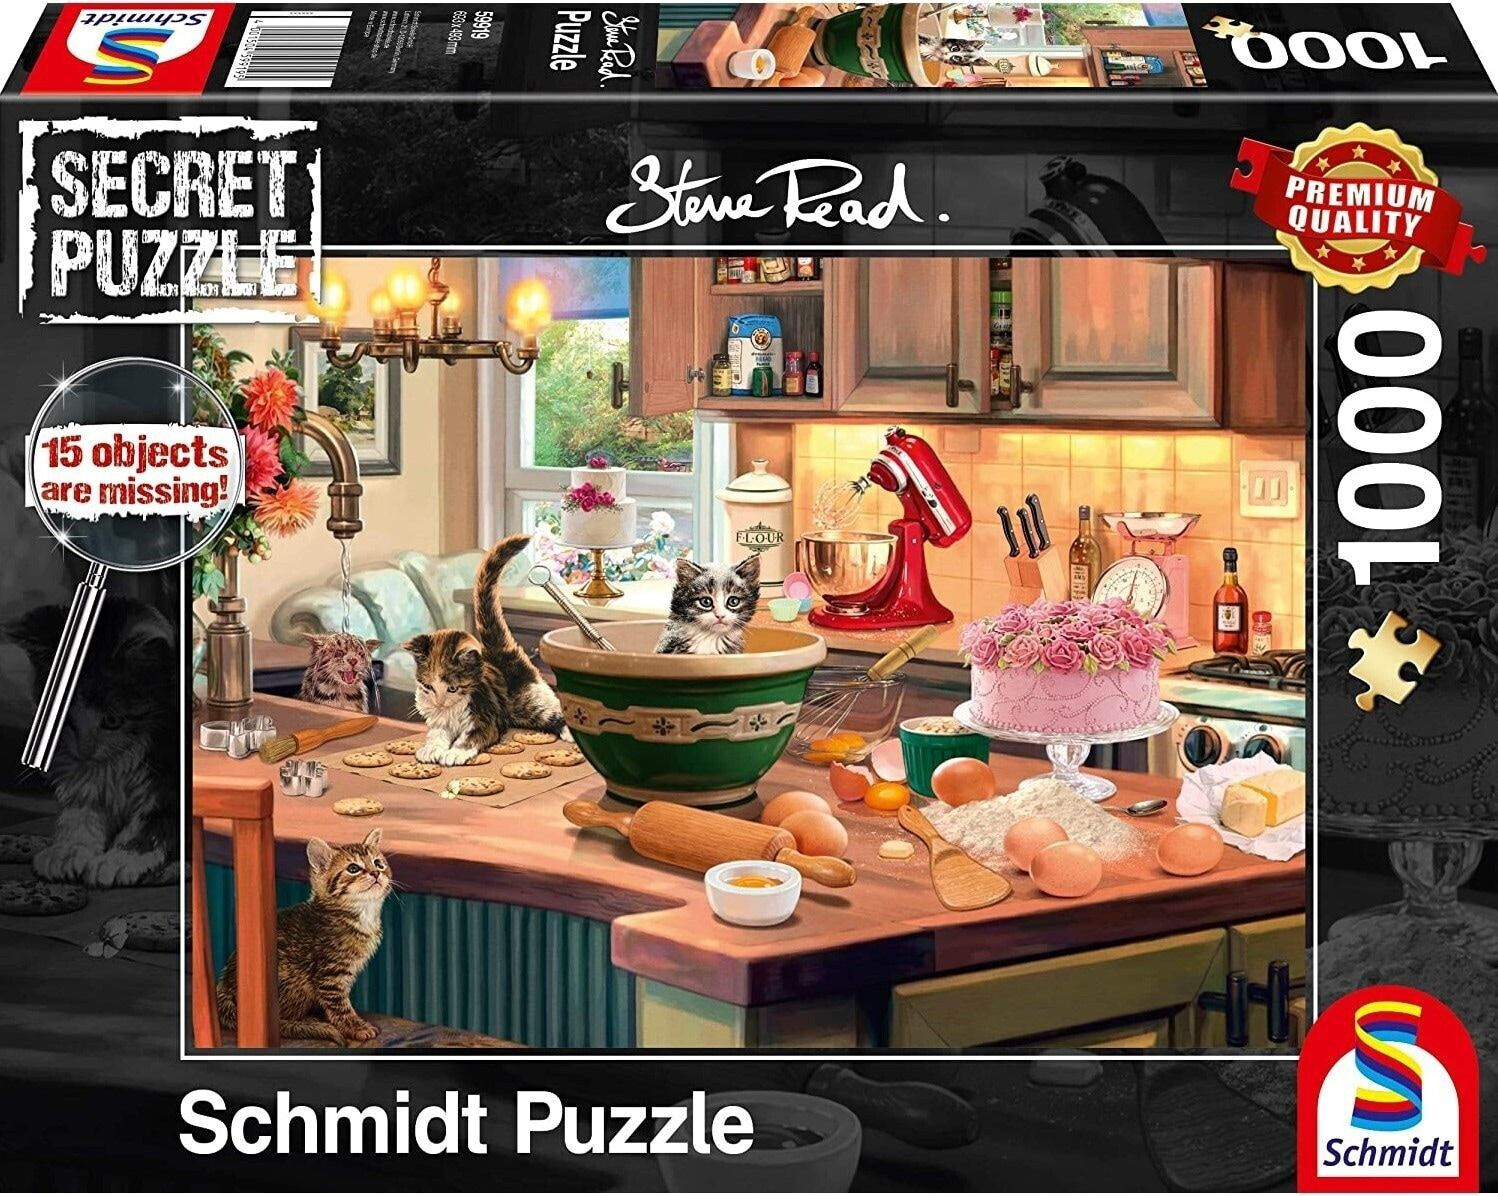 Schmidt-Spiele Secret Puzzles - Am Küchentisch, 1000 Teile (59919